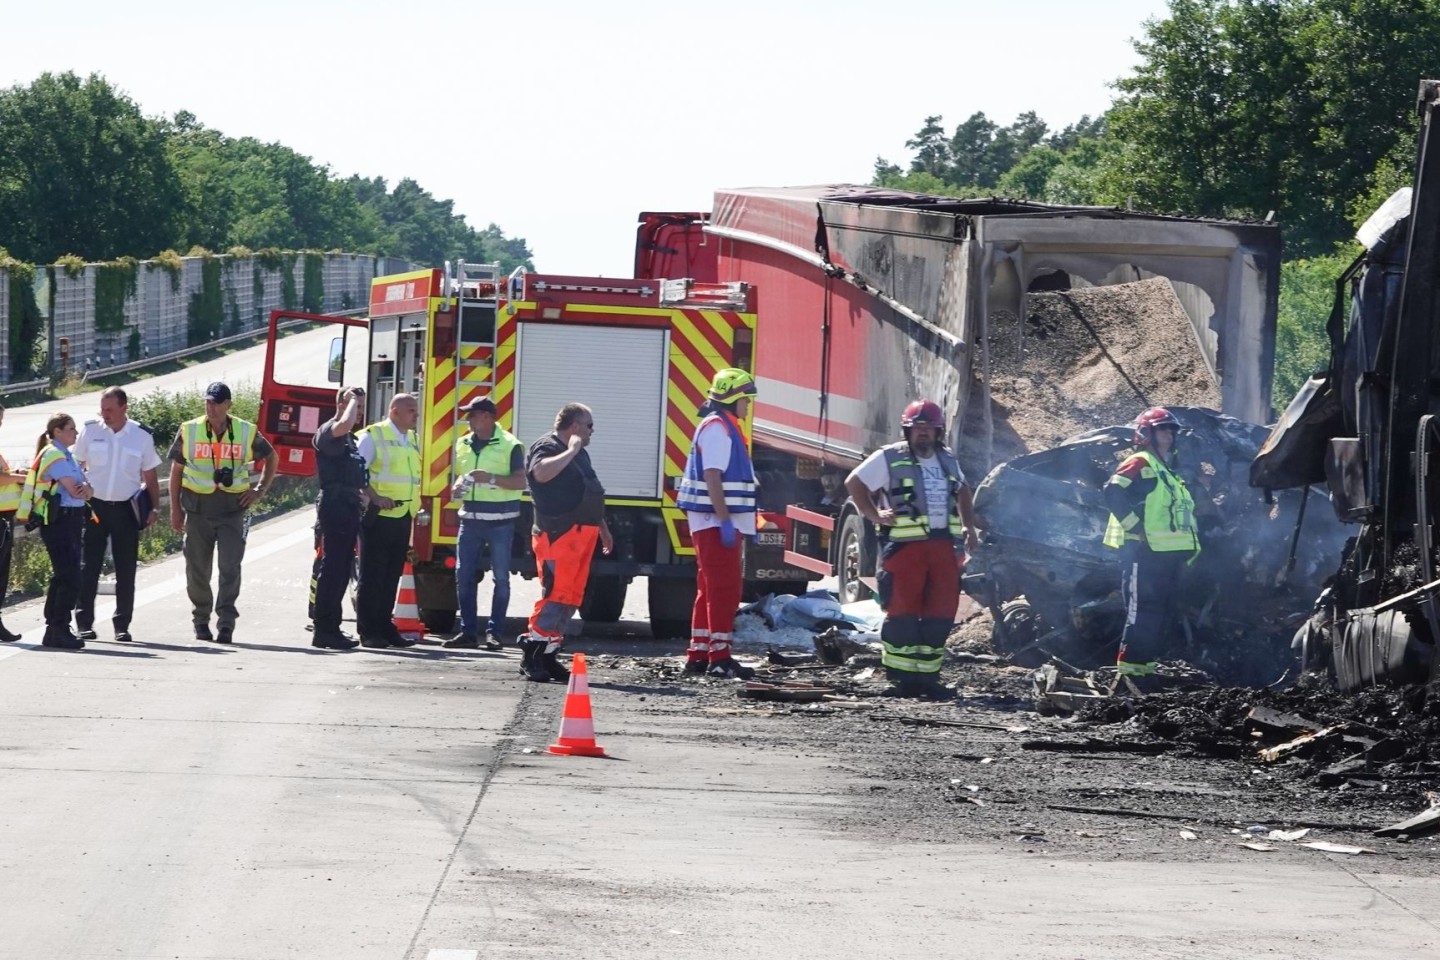 Rettungskräfte stehem nach dem schweren Unfall auf der Autobahn A2 bei Burg in Sachsen-Anhalt.